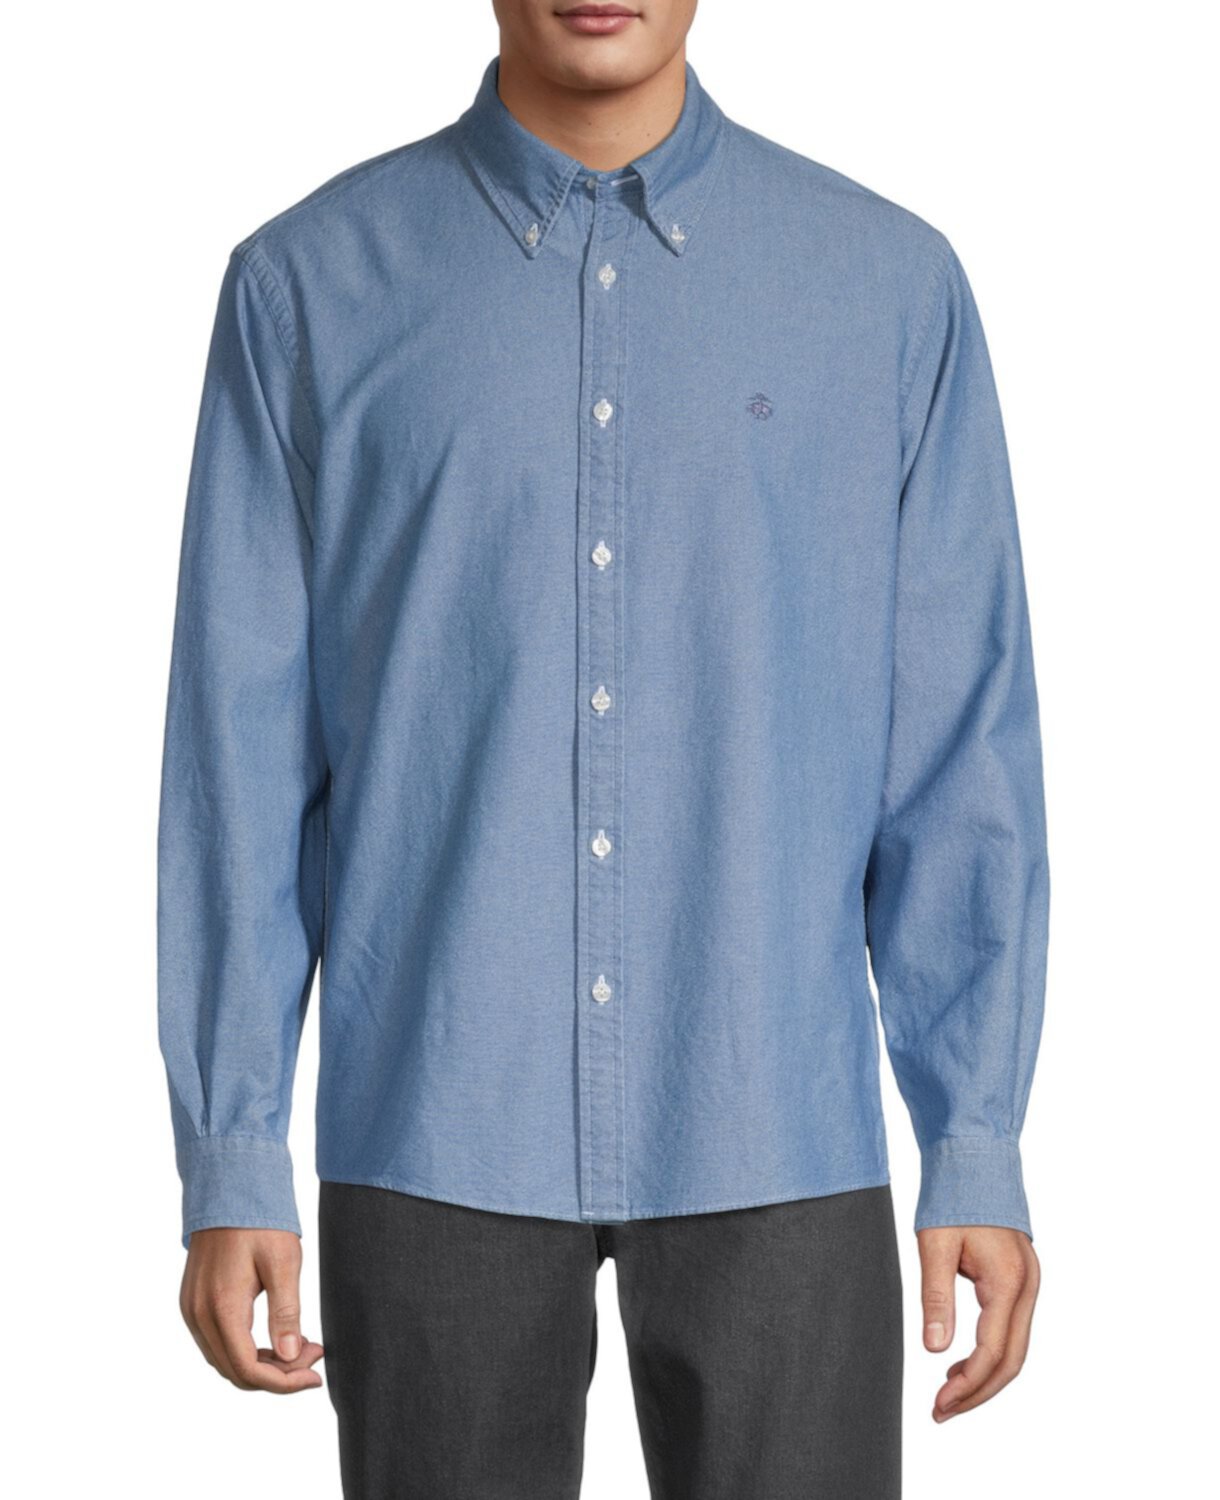 Джинсовая рубашка Milano-Fit Brooks Brothers